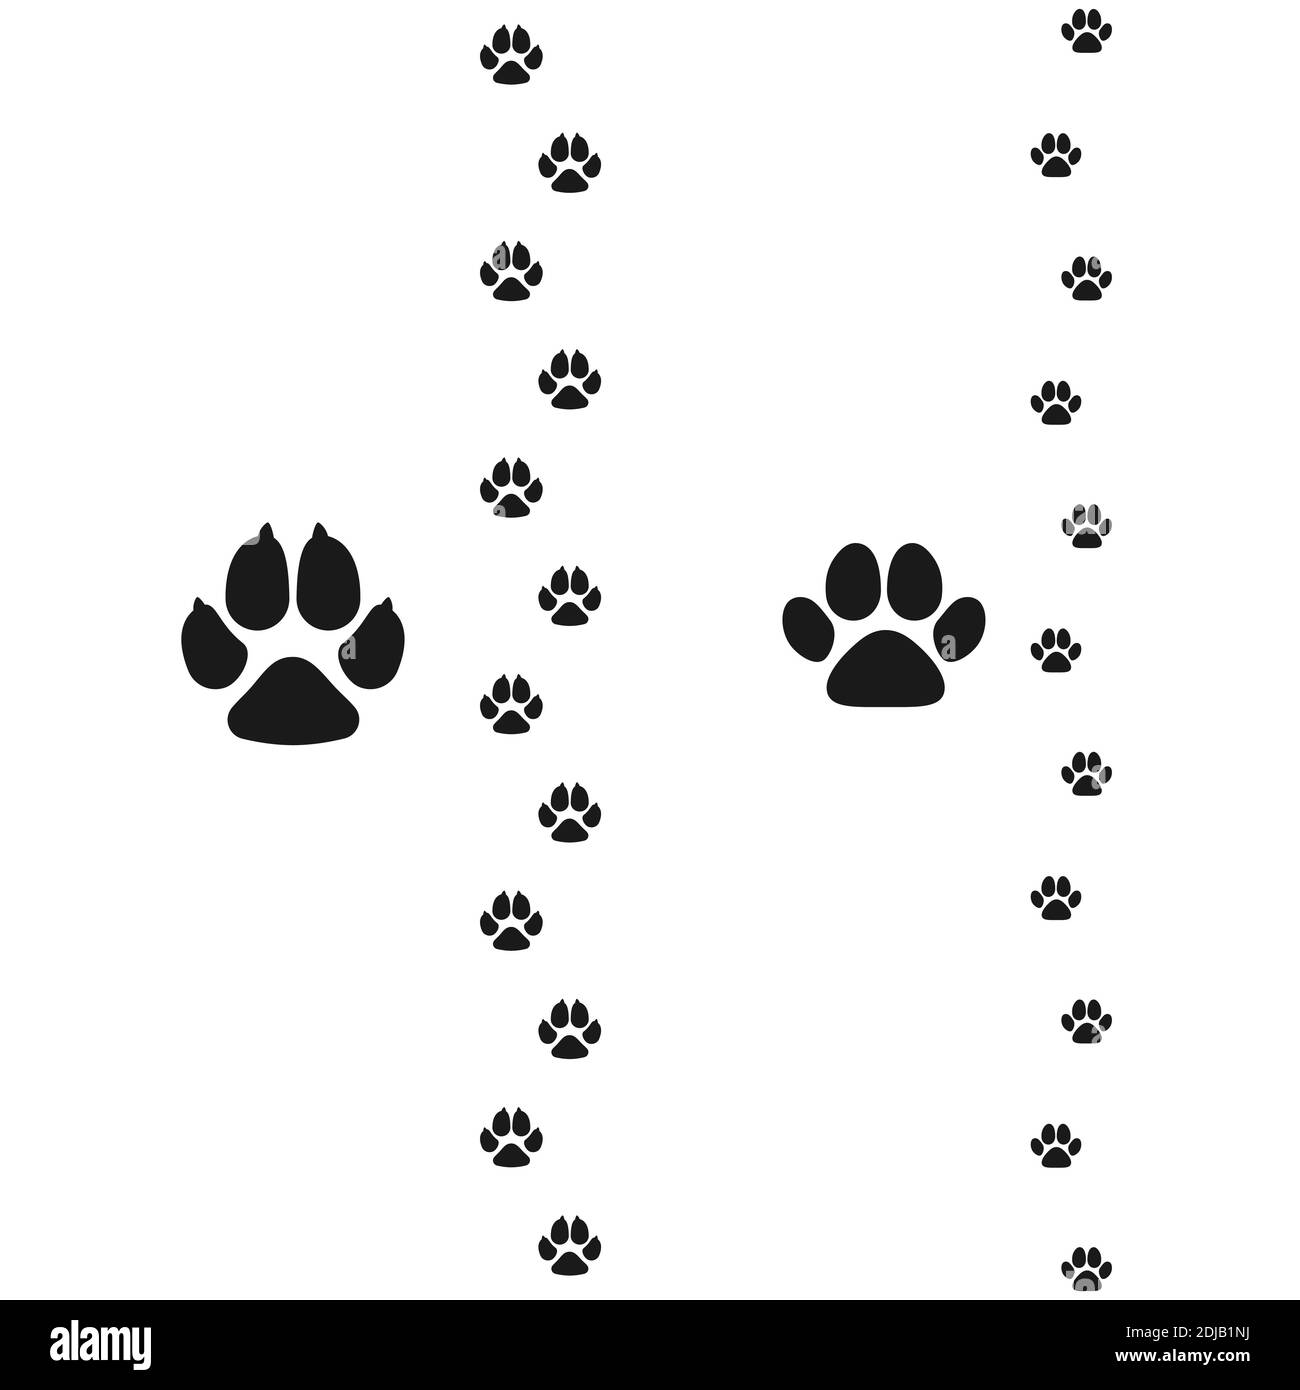 Cani e gatti zampe. Icona del footprint piatto PET. Illustrazione vettoriale isolata su sfondo bianco Illustrazione Vettoriale